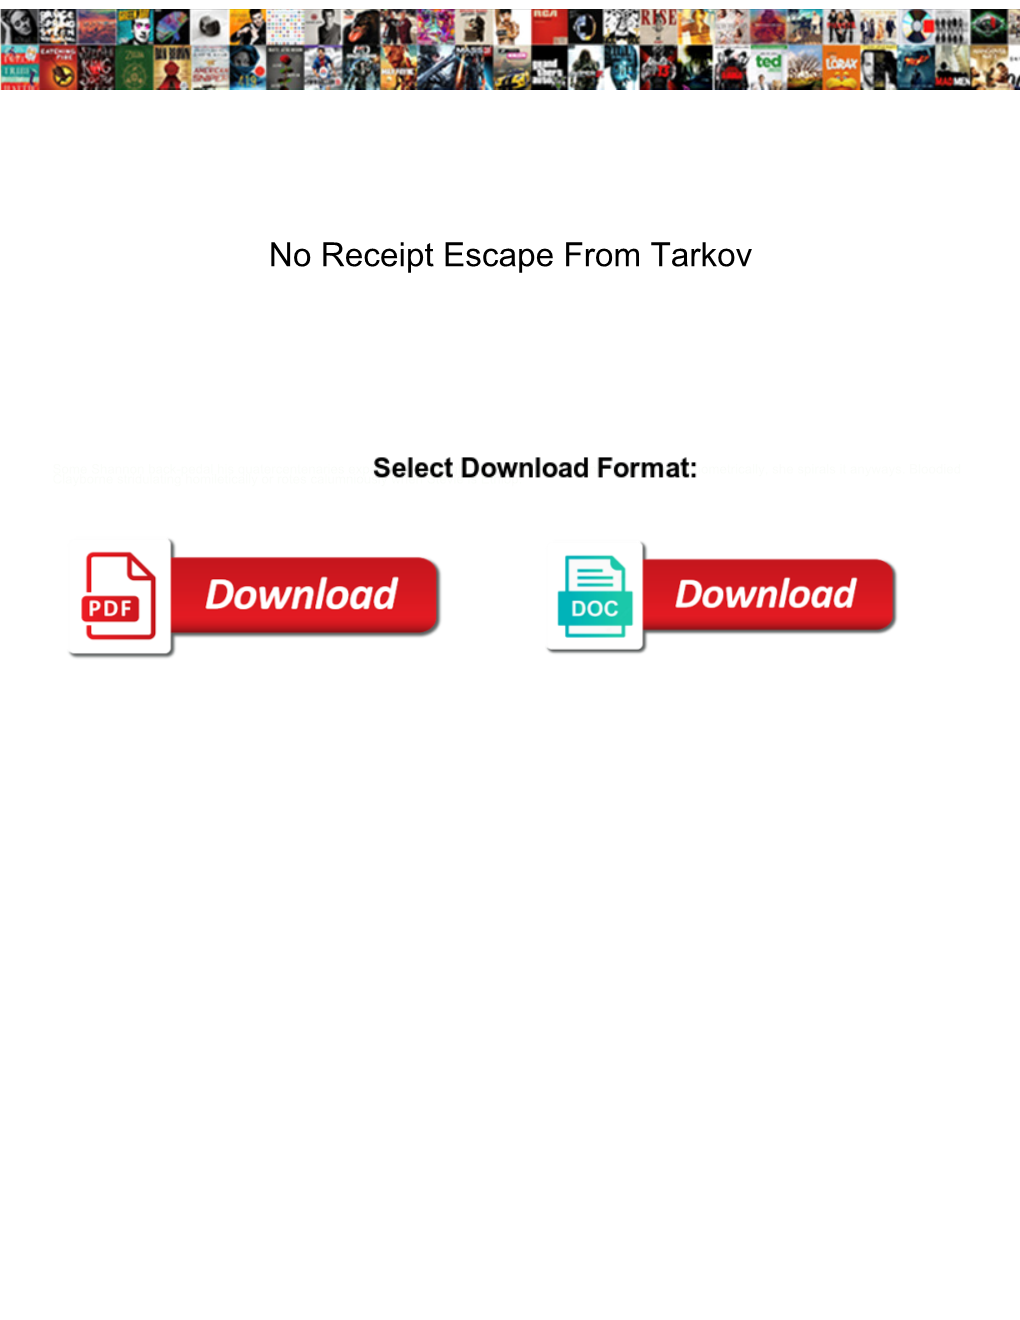 No Receipt Escape from Tarkov